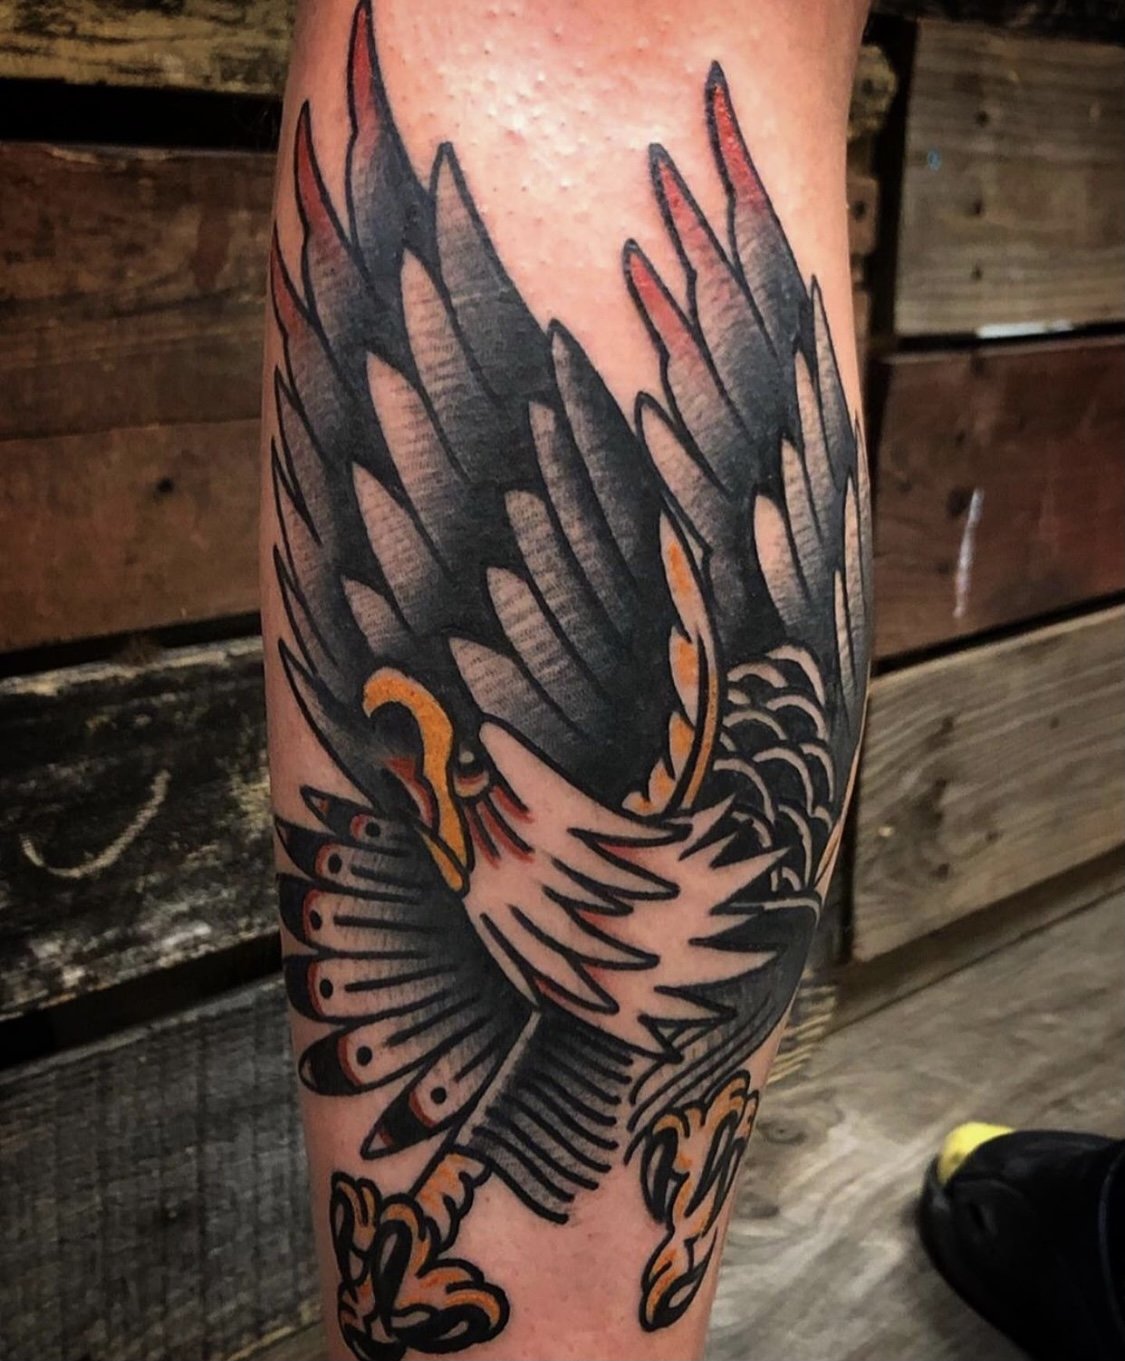 Ink port tattooz - 🦅 eagle tattoo on arm ⚜️ . . . . Done by @pb.26✓ # eagletattoo #tattoo #eagle #tattoos #ink #traditionaltattoo  #blackandgreytattoo #inked #tattooartist #tattooart #tattoolife #art #eagles  #skulltattoo #tattooed #